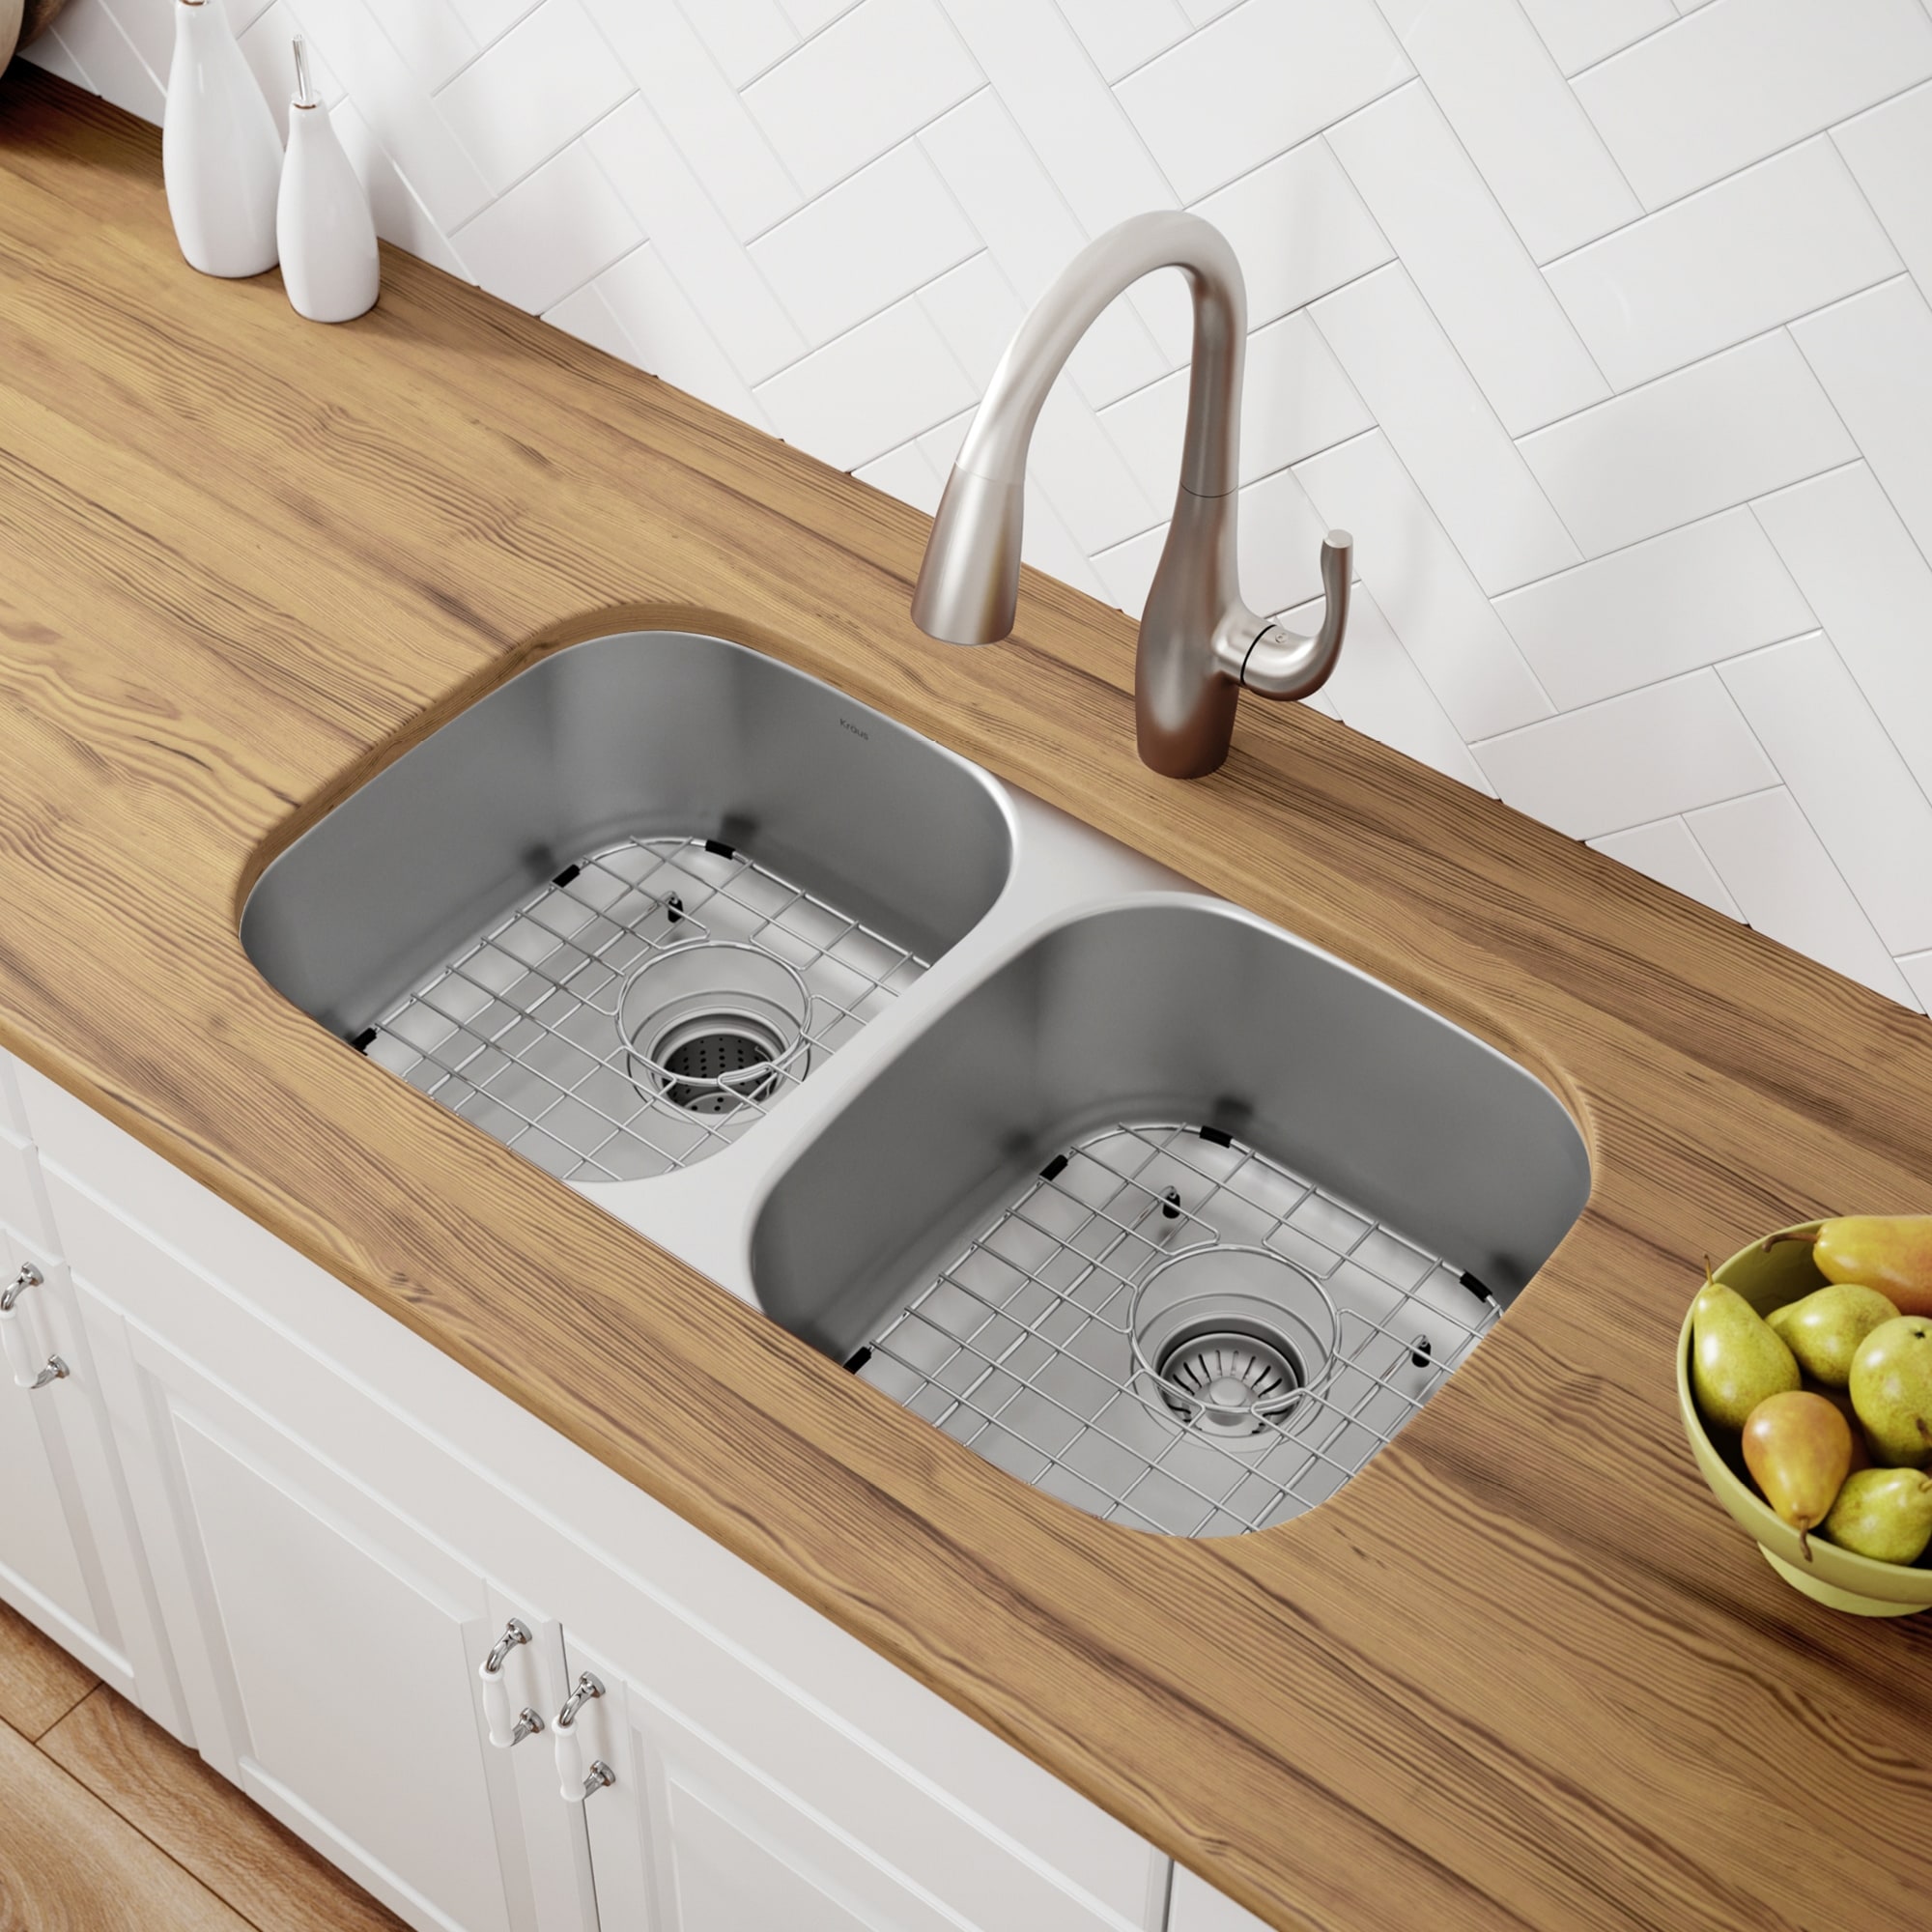 KRAUS Premier Stainless Steel 32 inch 2-Bowl Undermount Kitchen Sink Bed  Bath  Beyond 4282014